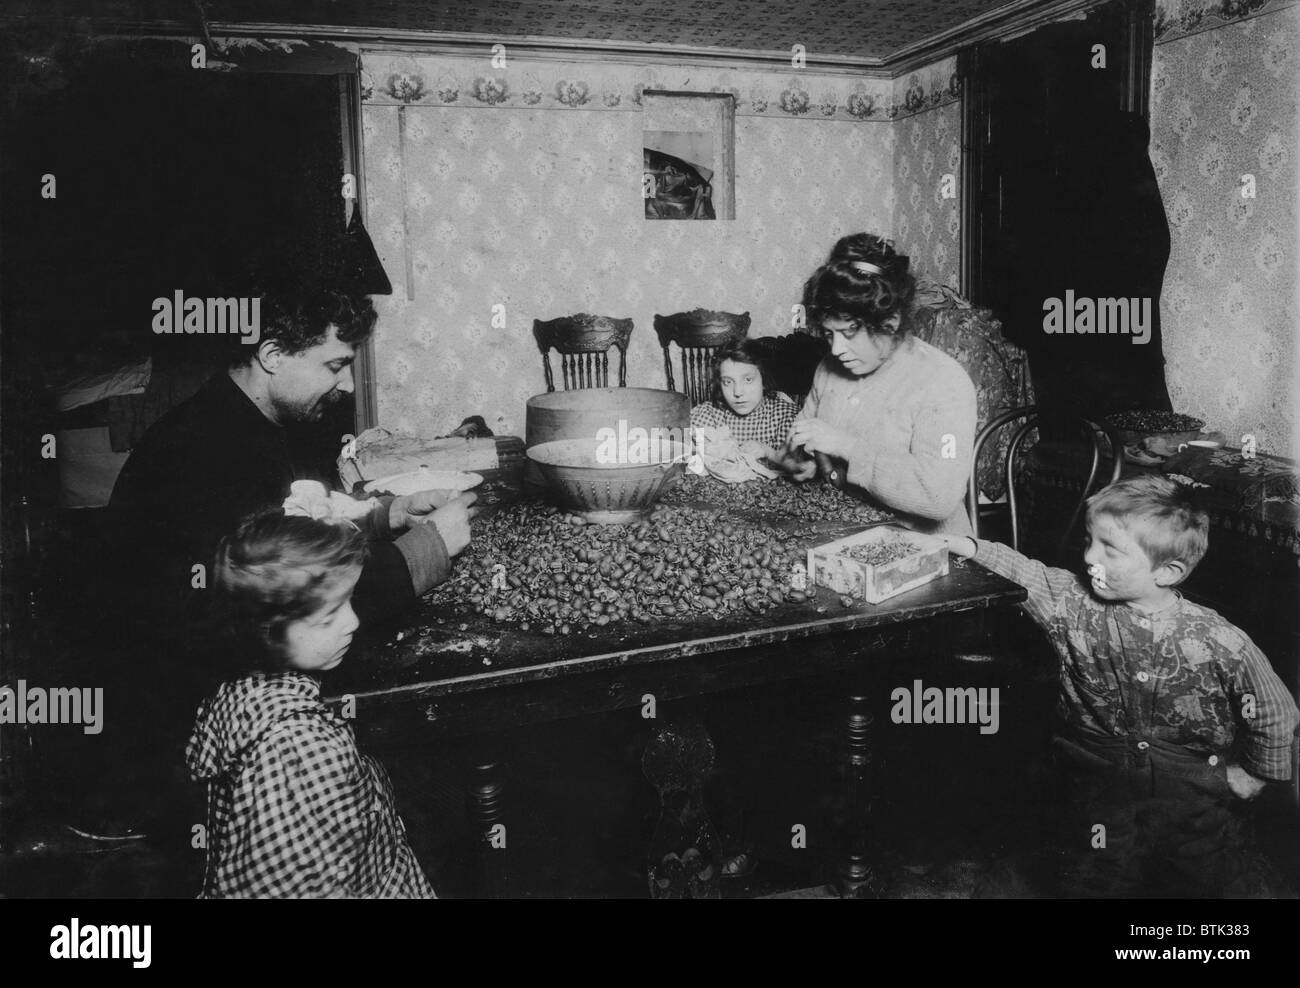 La famille de travail, légende : écrous "Ramassage en sous-sol sale, les enfants étaient plus sales que l'on puisse imaginer sur patte d'écrous, de manger le déjeuner sur la table, la mère avait un rhume, son nez fréquemment sans se laver les mains et le mouchoir sale qui reposait confortablement sur la table et à proximité de noix et noix', New York, photo de Lewis Wickes Hine, Décembre, 1911 Banque D'Images